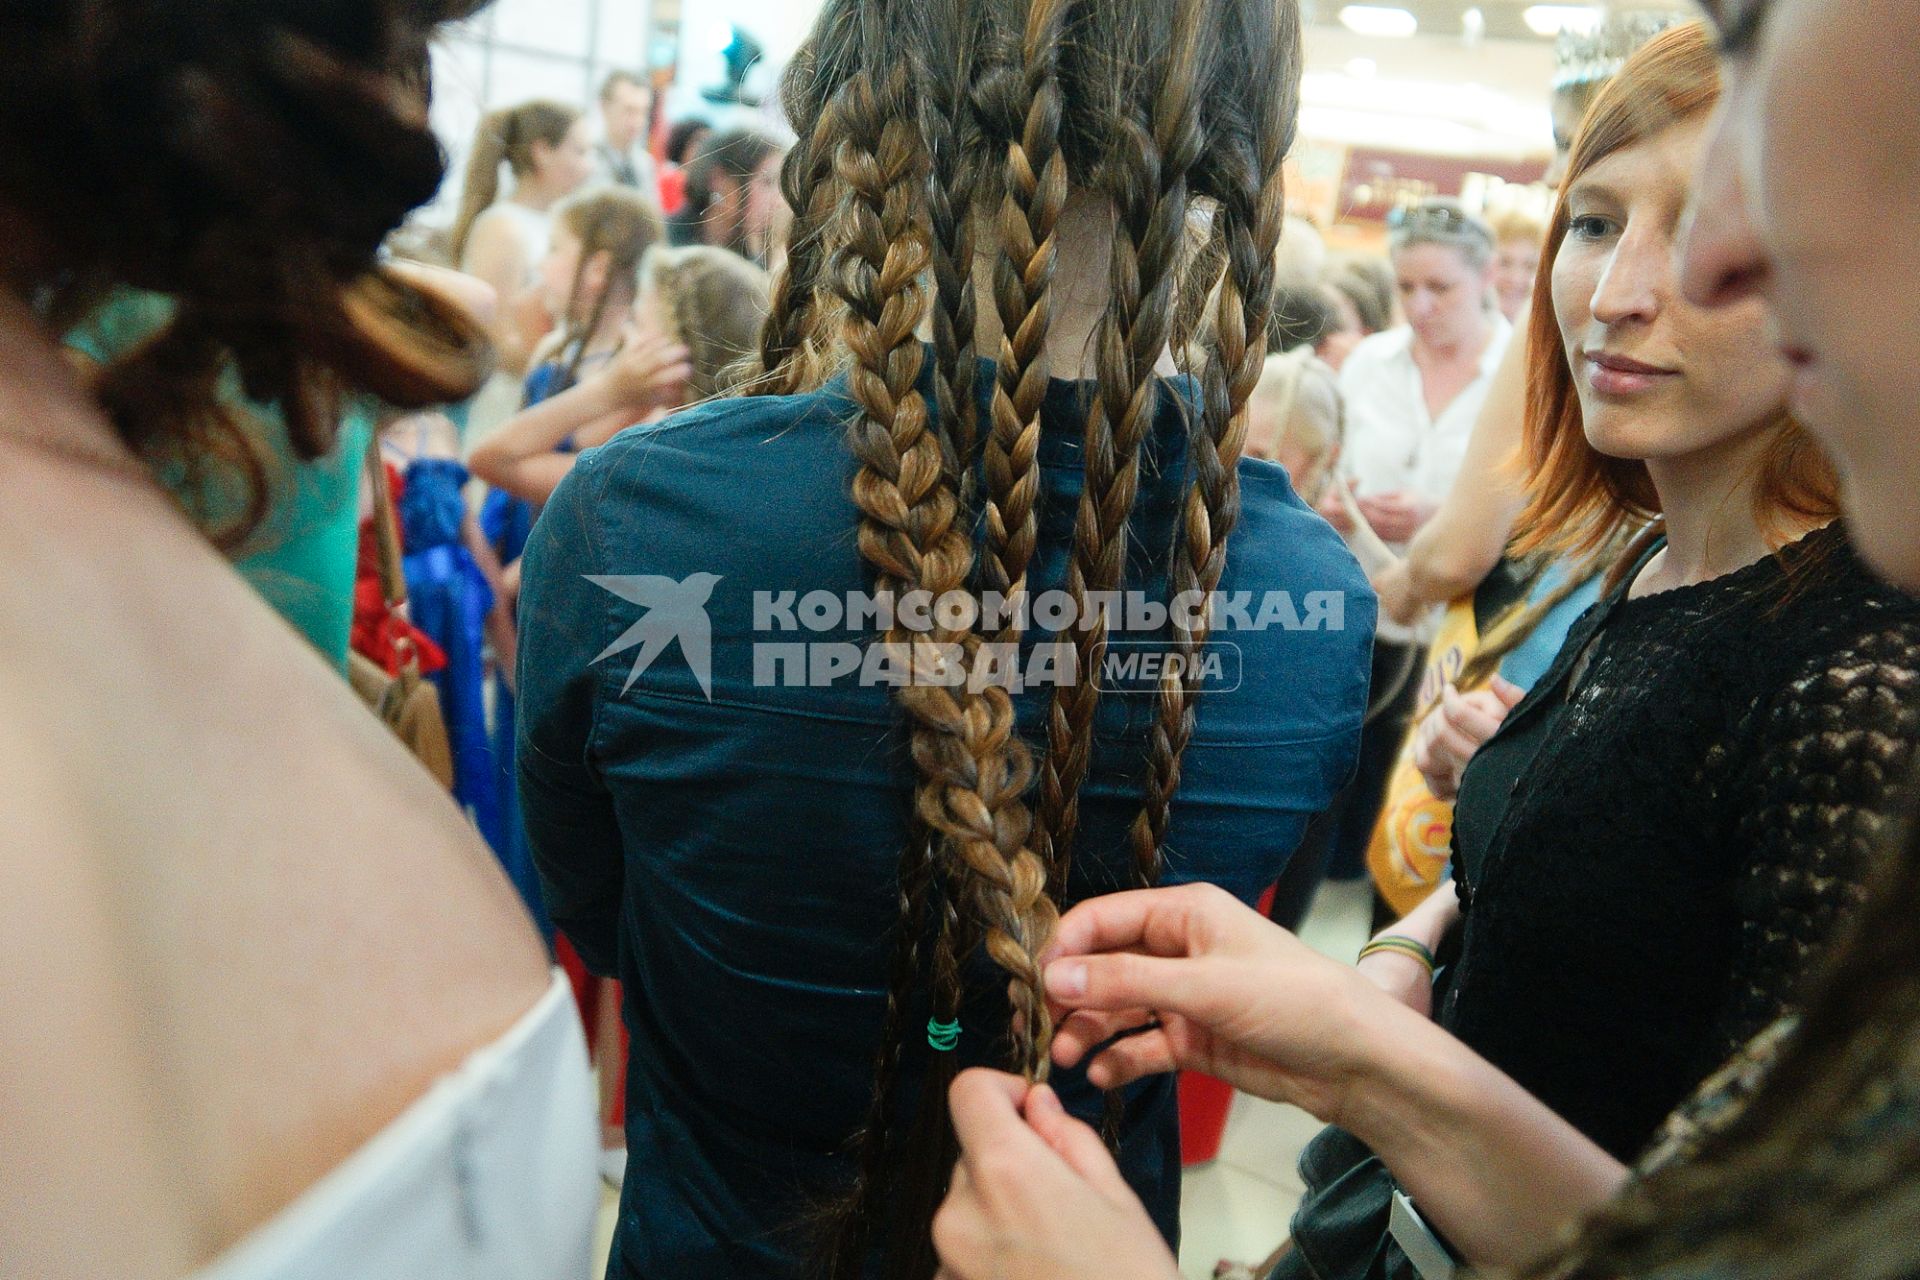 Финал конкурса `Уральская краса — длинная коса 2013`. На снимке: участнице заплетают косичку.